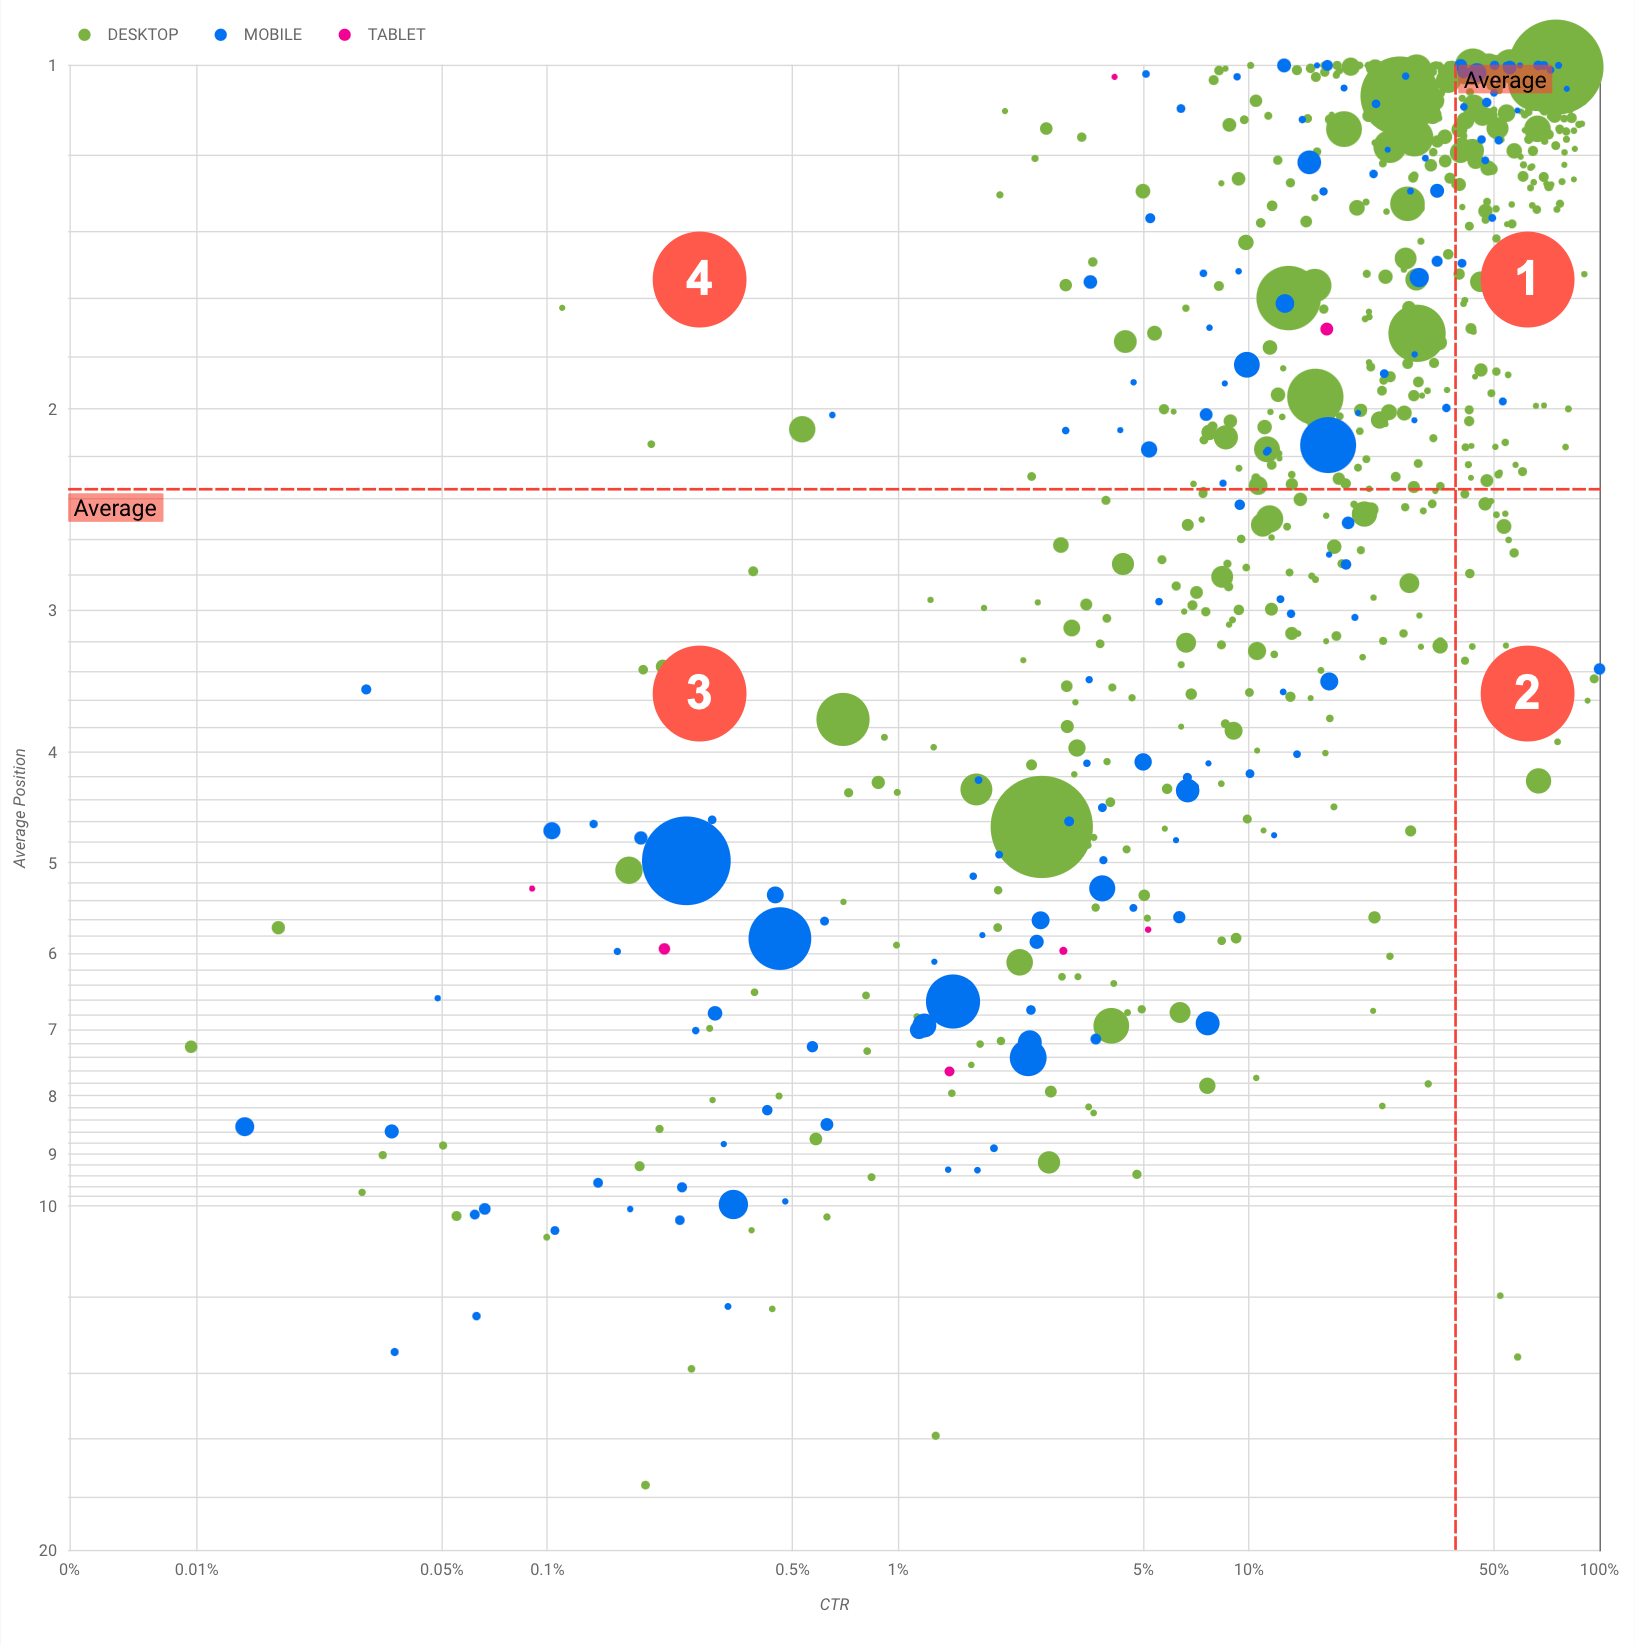 Gráfico de burbujas que muestra cuatro tipos de rendimiento de las consultas